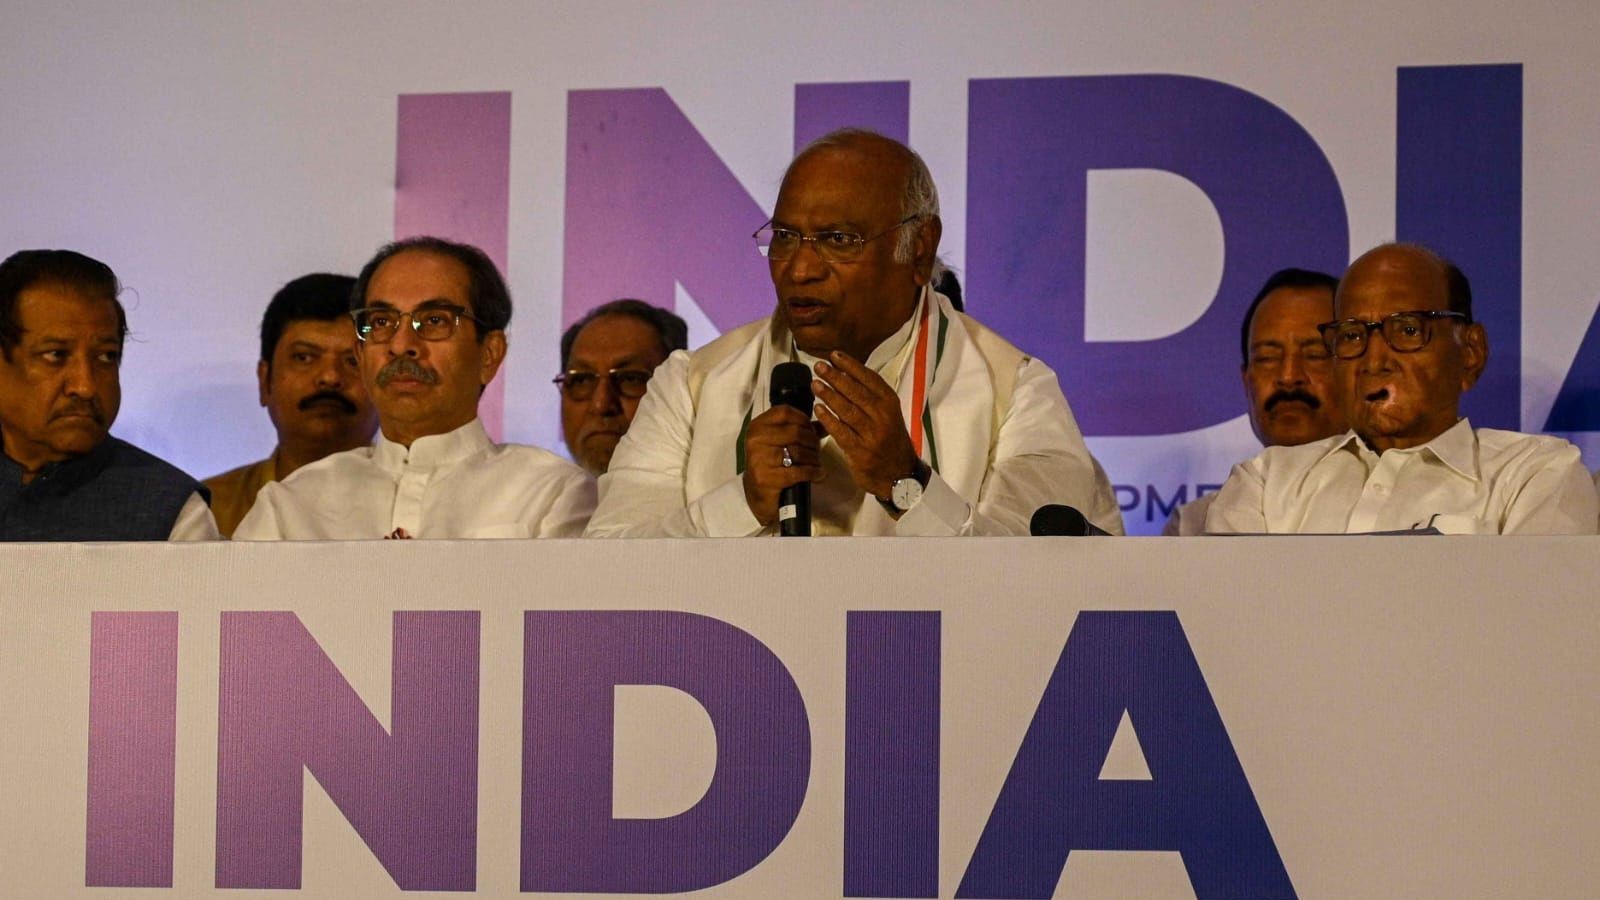 Mumbai News Live Updates: PM Modi calls us ‘nakli’ Shiv Sena, tomorrow he may call RSS as ‘nakli Sangh,’ says Uddhav Thackeray at INDIA bloc press conference